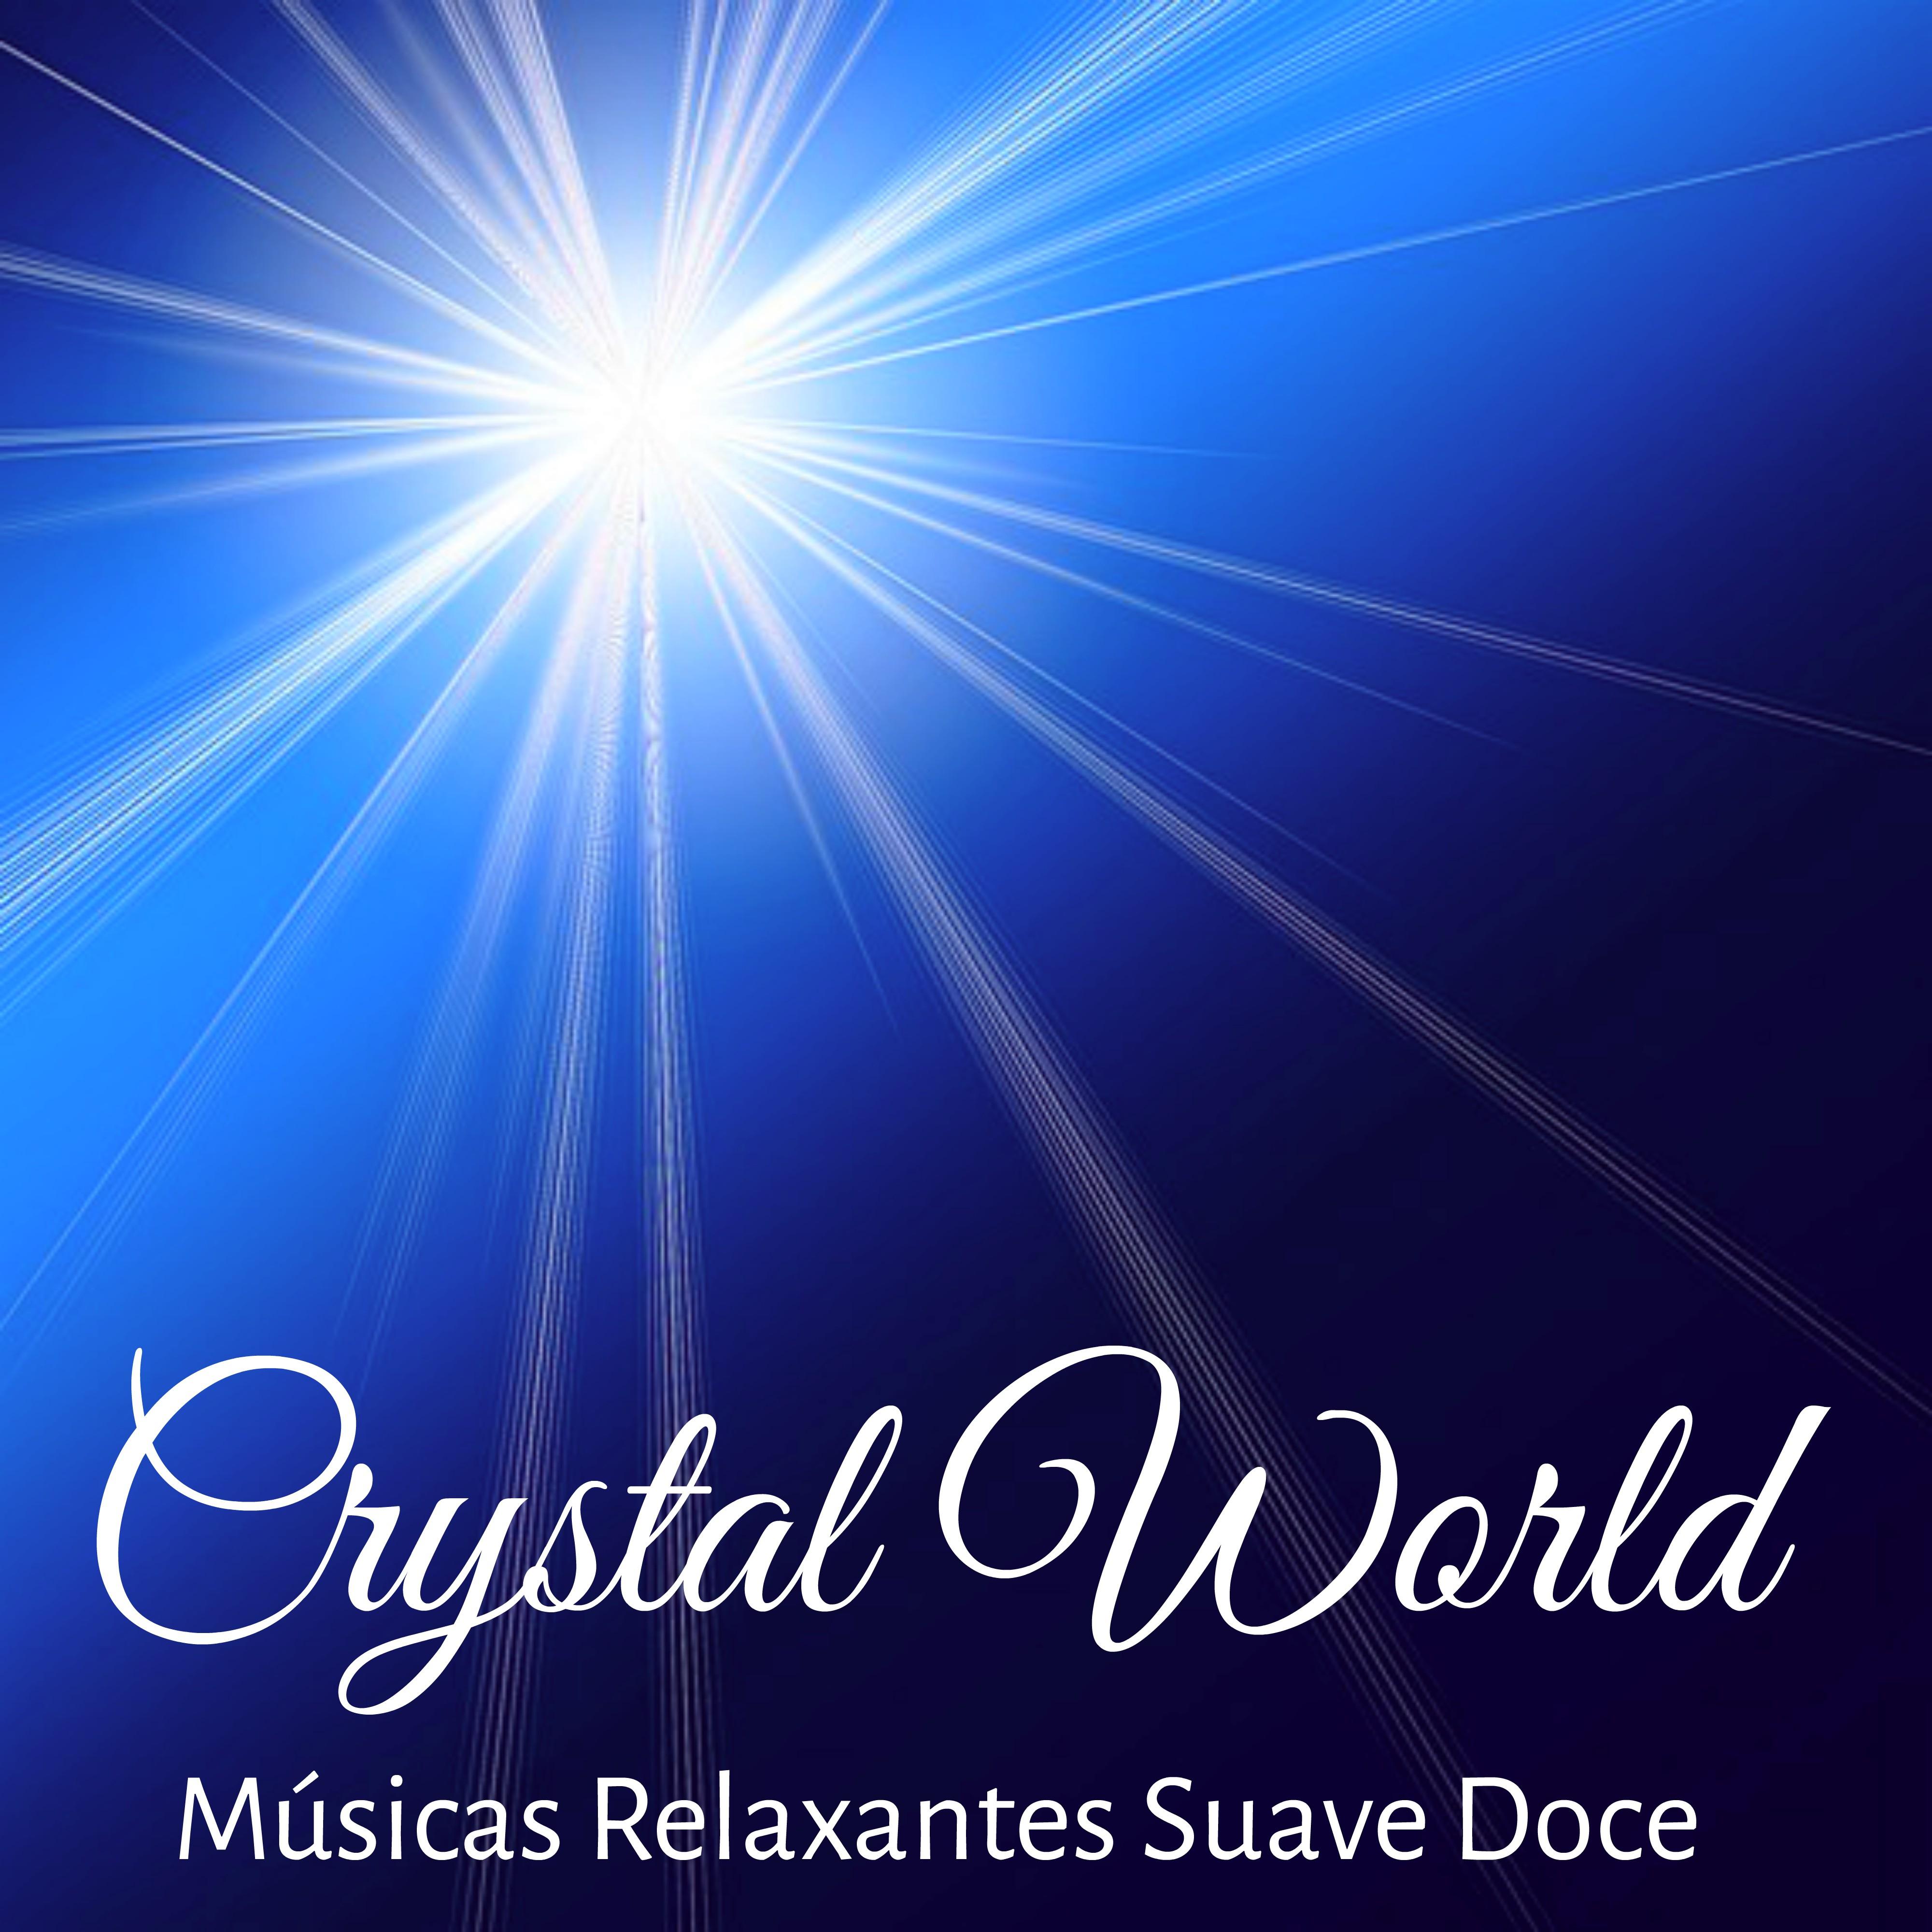 Crystal World  Mu sicas Relaxantes Suave Doce para Sau de Bem Estar e Alinhamento dos Chakras con Sons de Medita o Profunda New Age Instrumentais